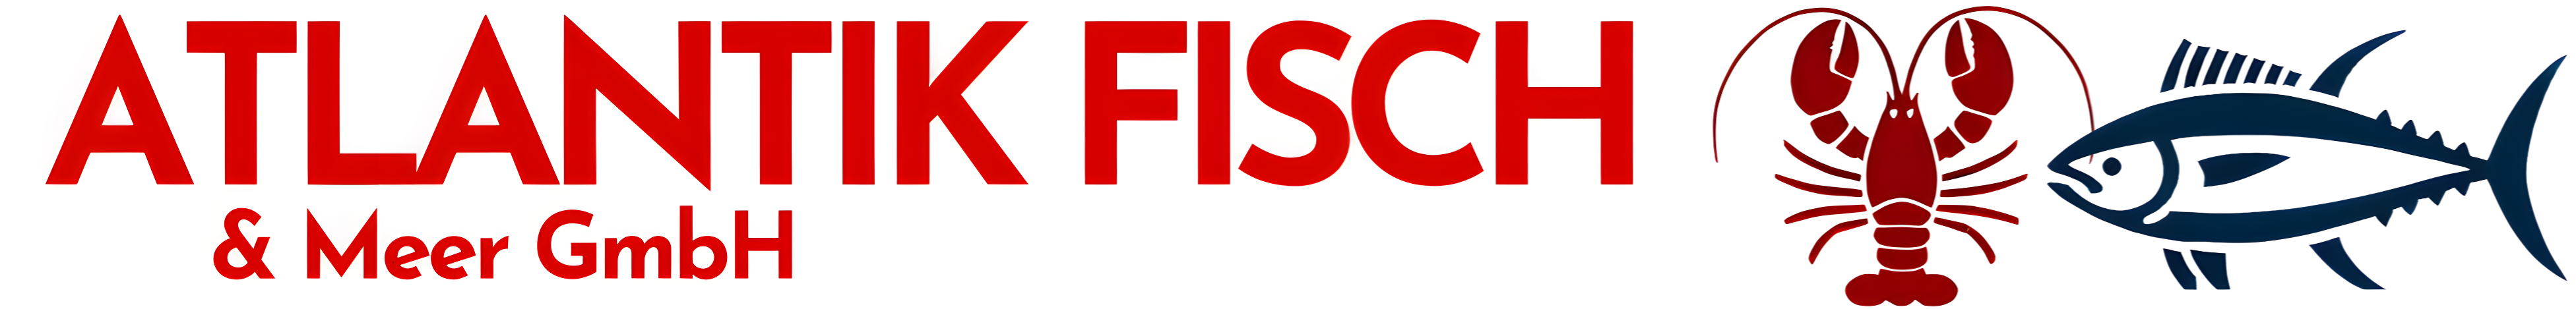 ATLANTIK FISCH-Logo